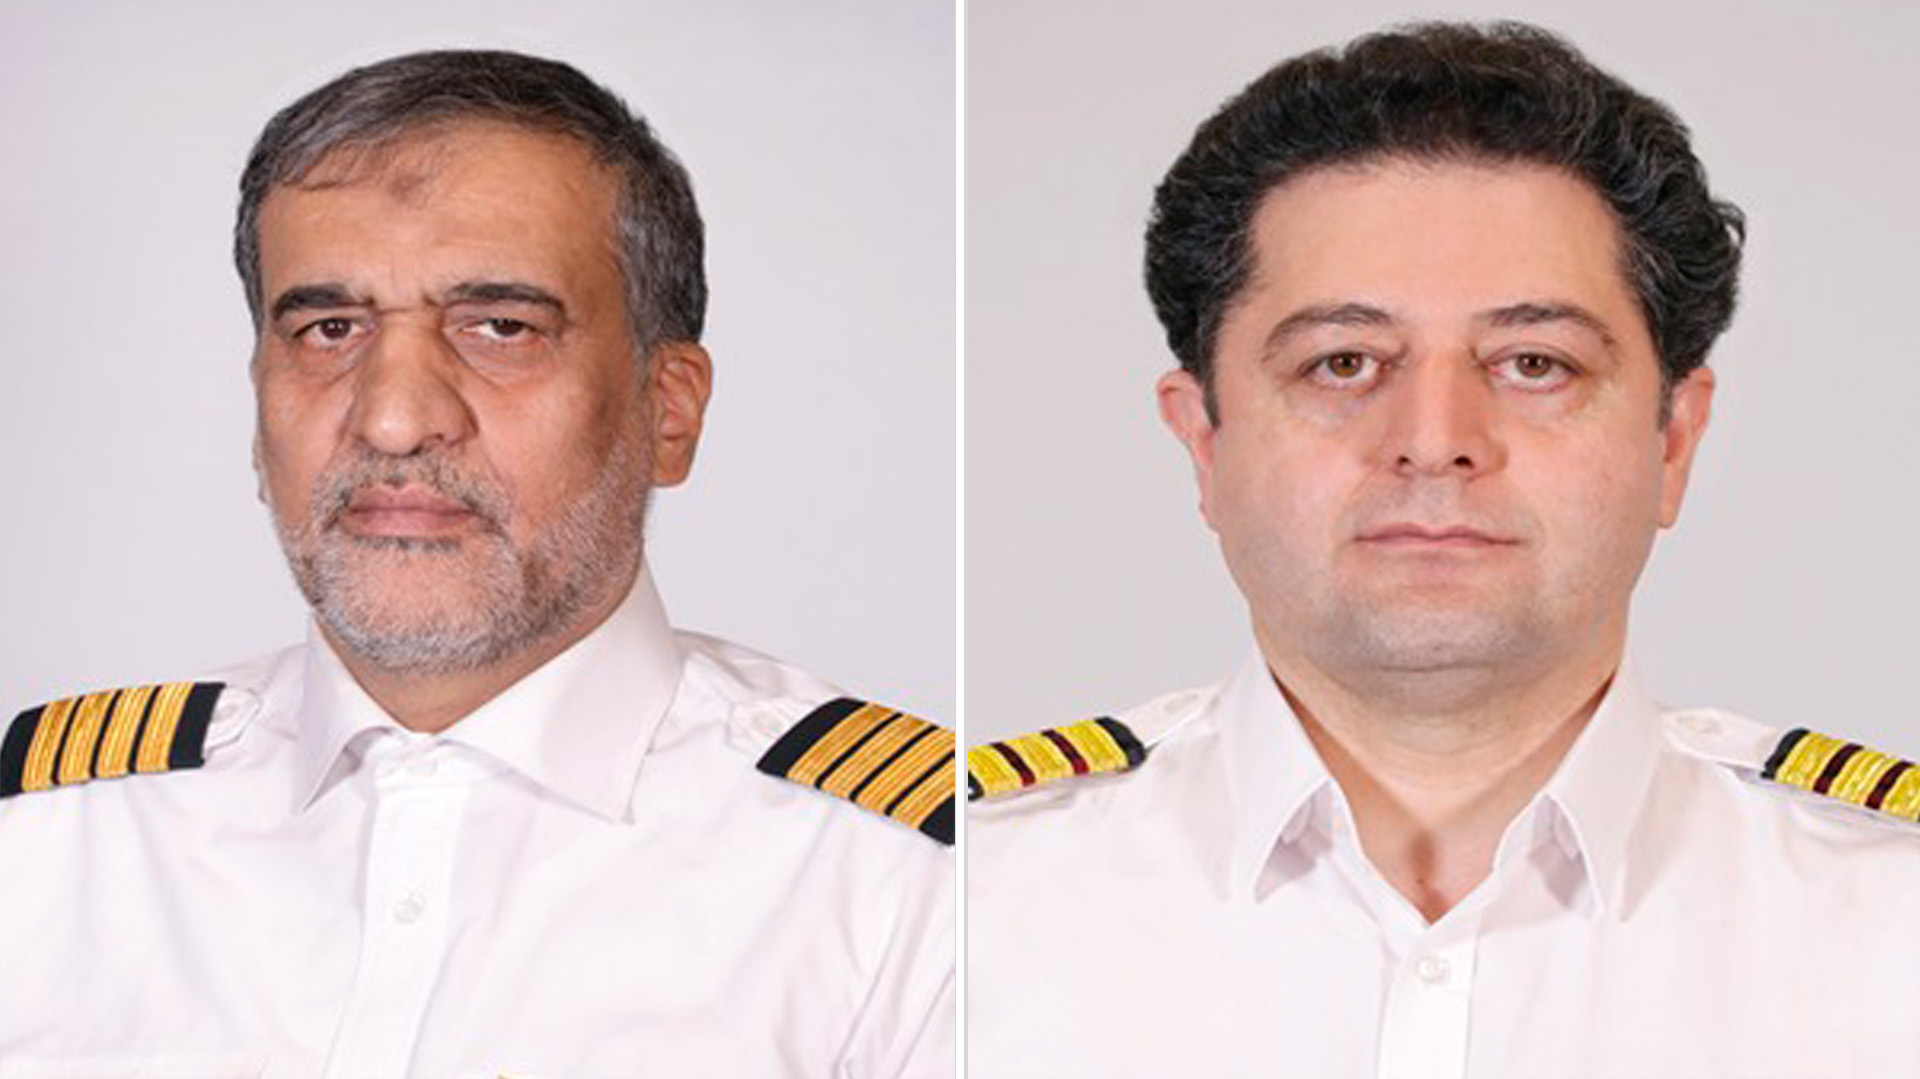 El piloto y copiloto del avión venezolano-iraní